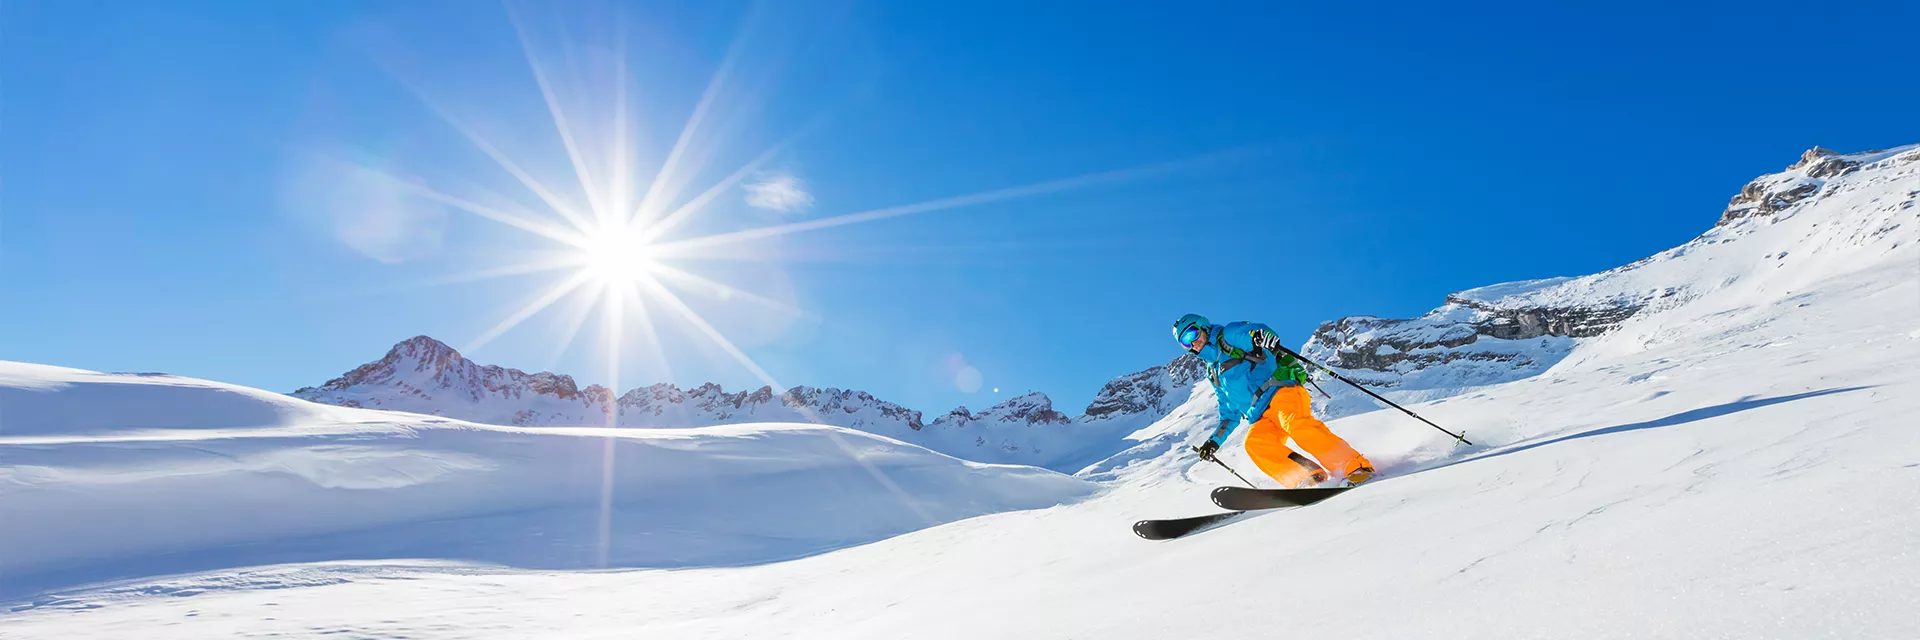 Votre séjour au ski dans les Alpes du Sud